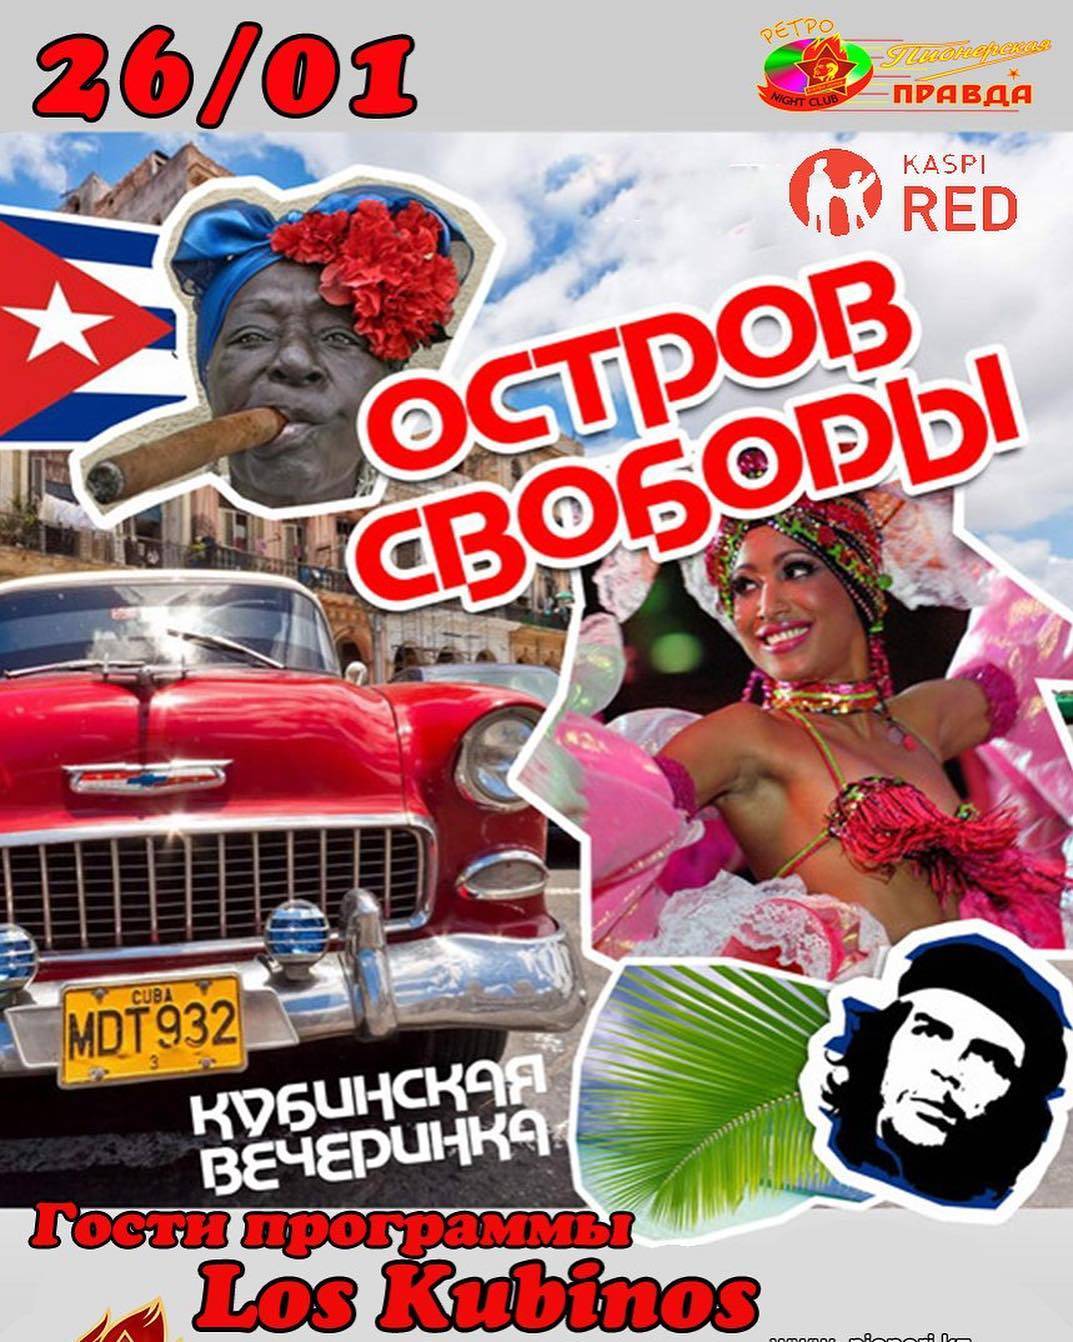 Стиль кубинской вечеринки: организуем самый жаркий праздник